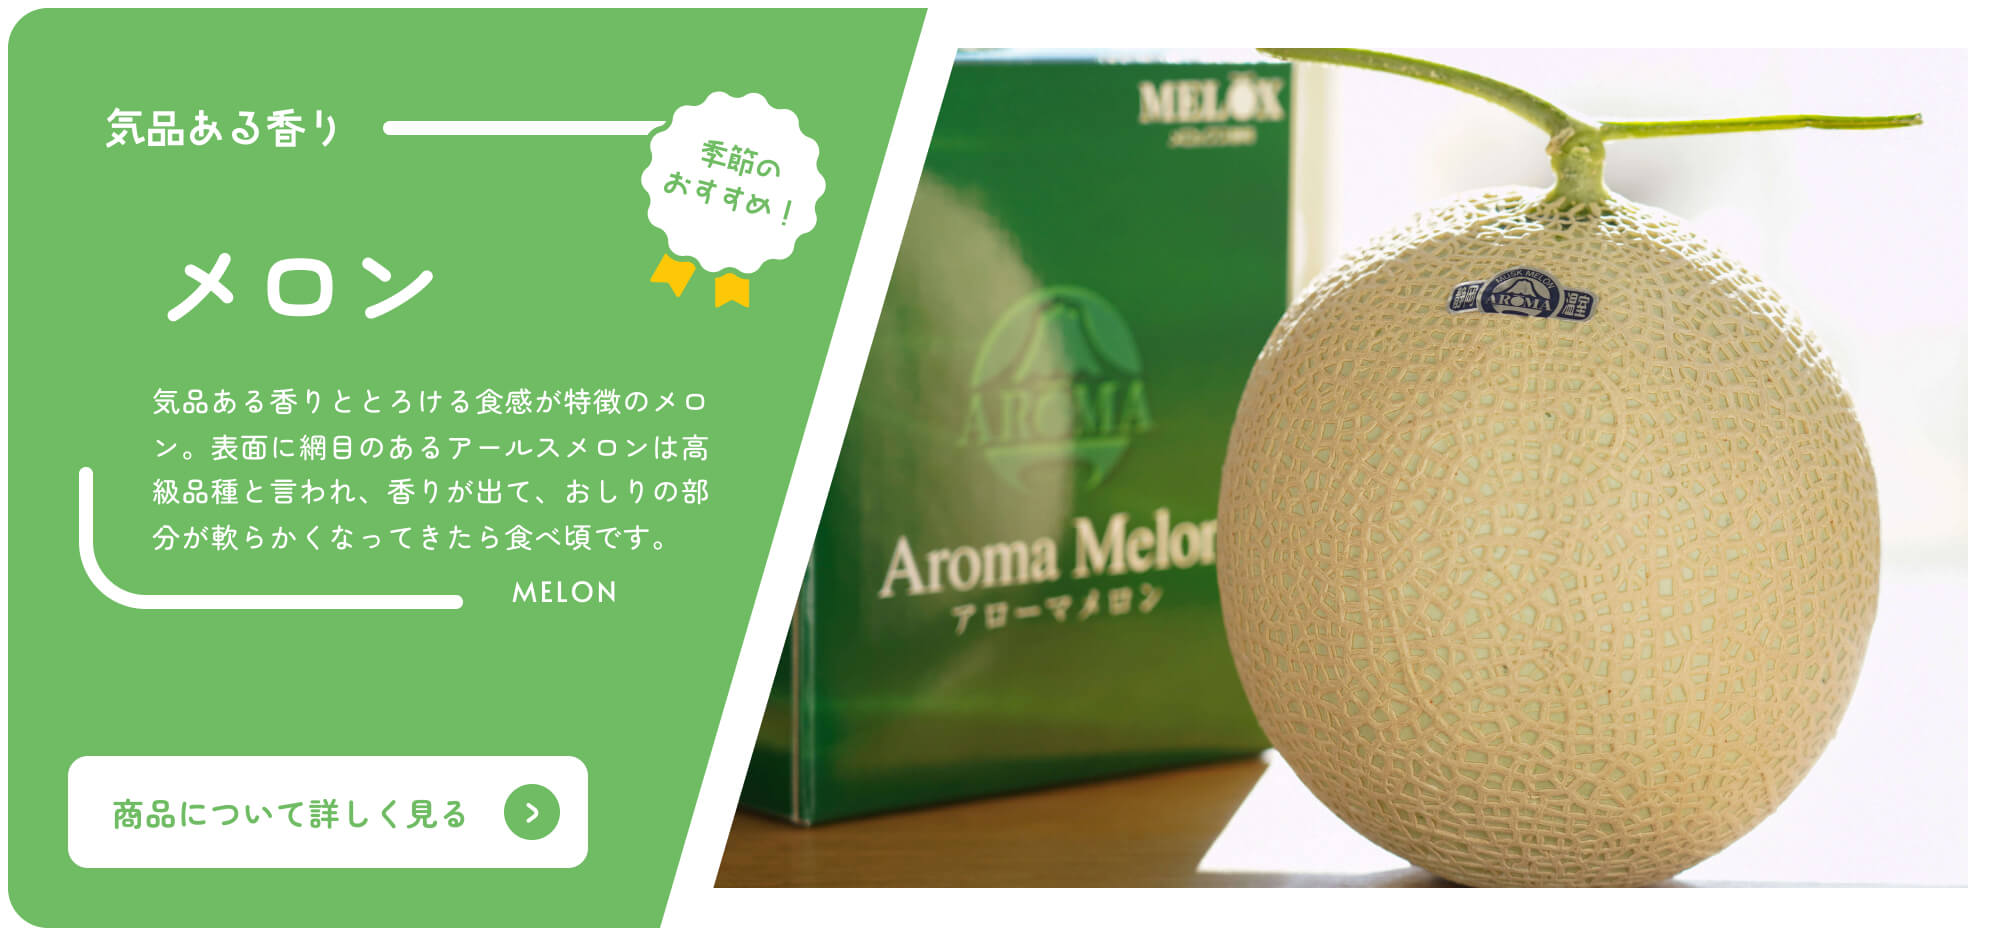 Acheter le catalogue en ligne de Shizuoka Saisonnier Recommandé Melon